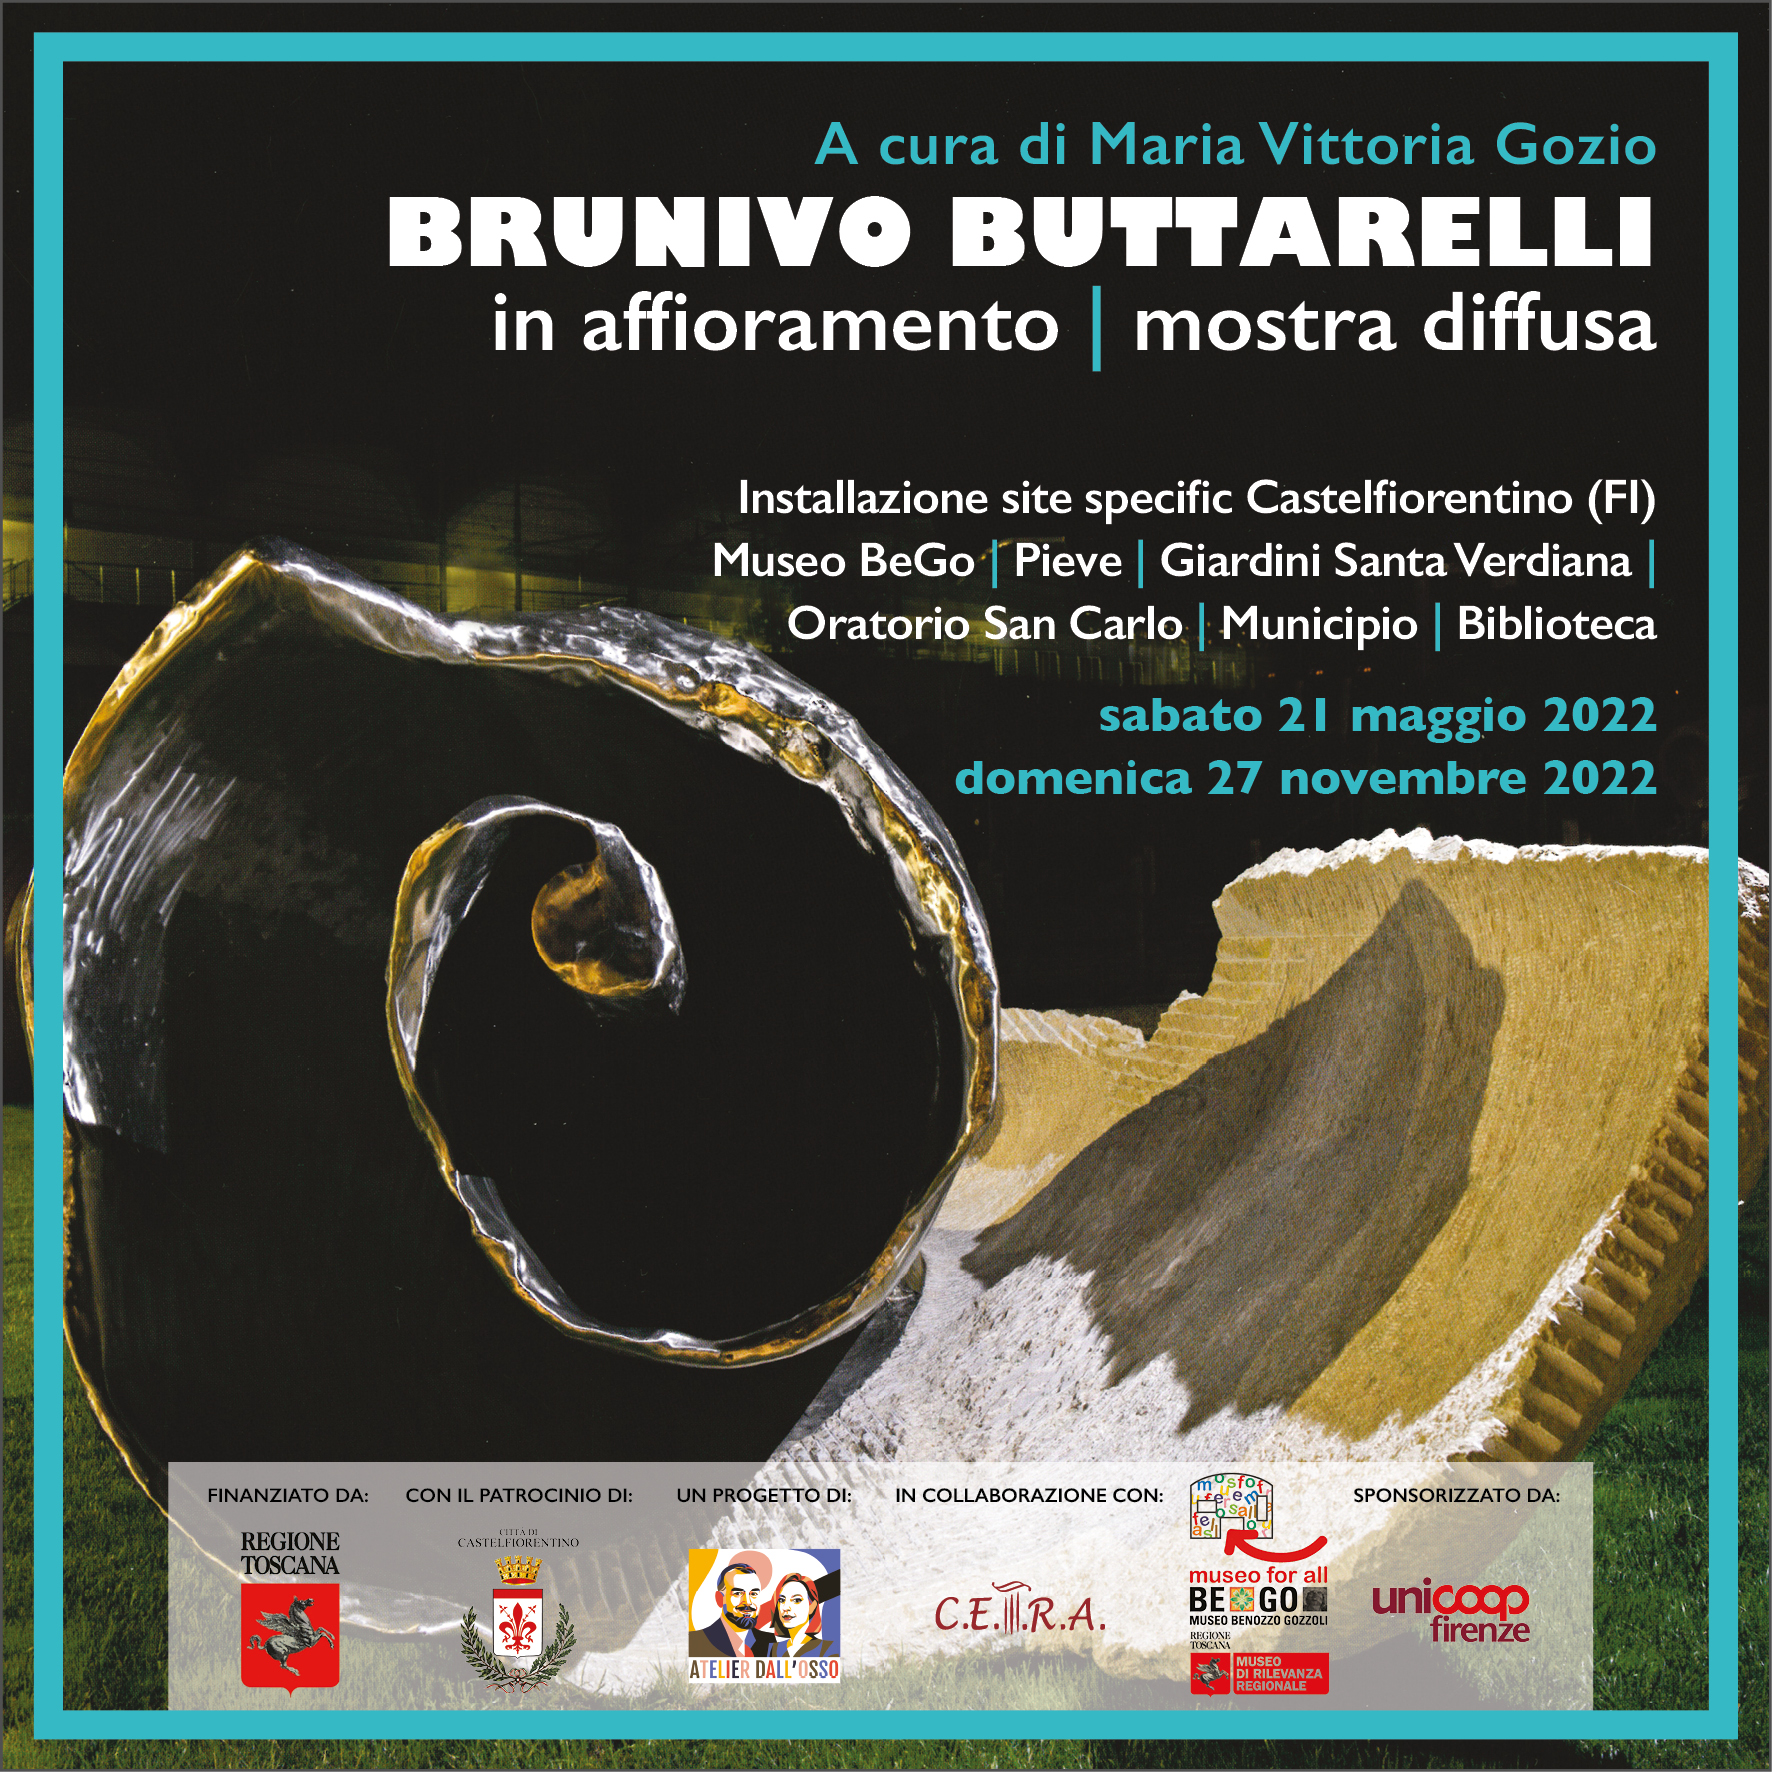 Brunivo Buttarelli